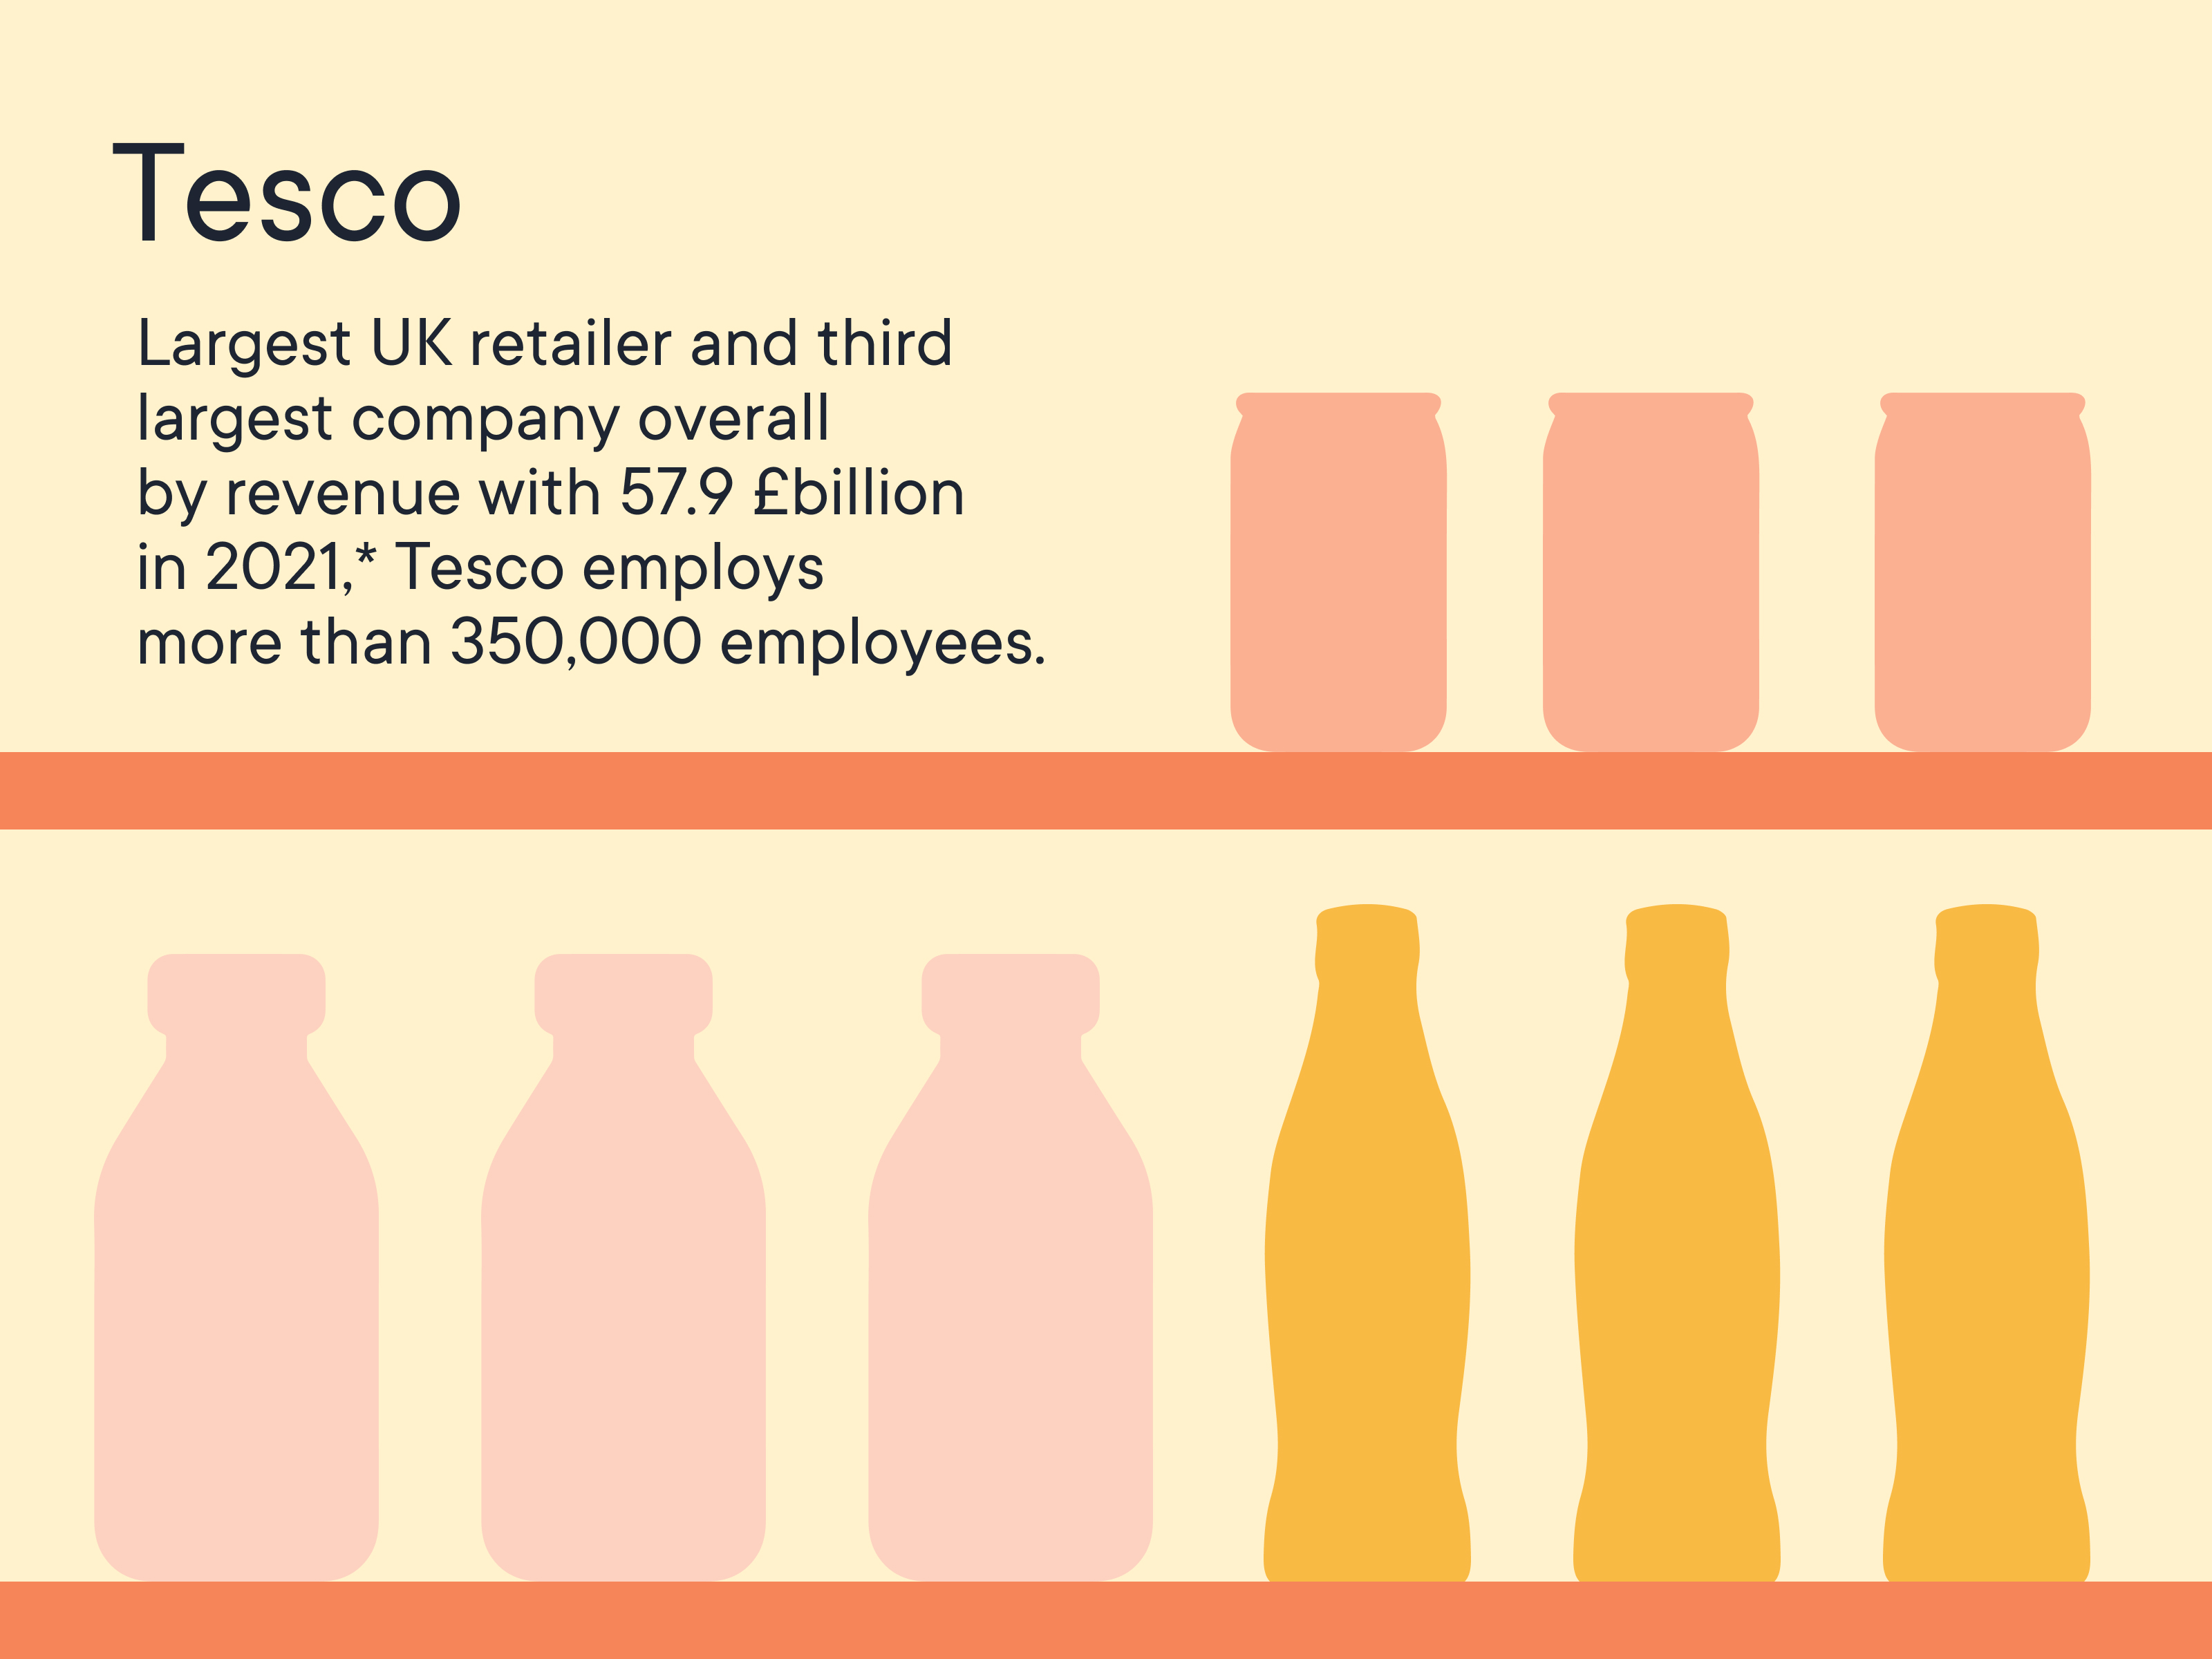 Tesco employs more than 350,000 employees.